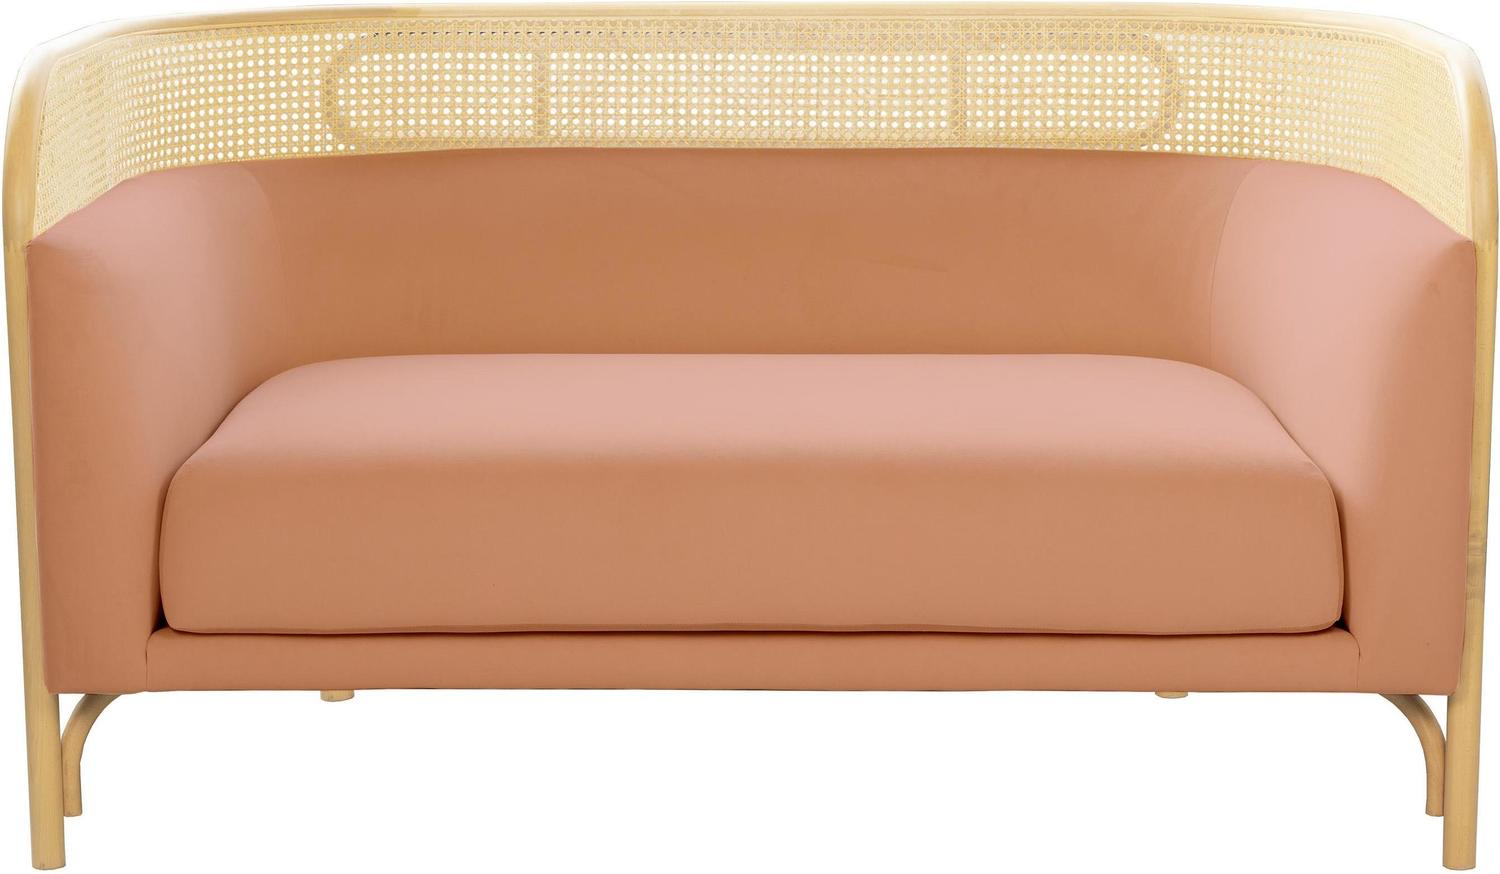 velvet cream couch Contemporary Design Furniture Loveseats Mauve